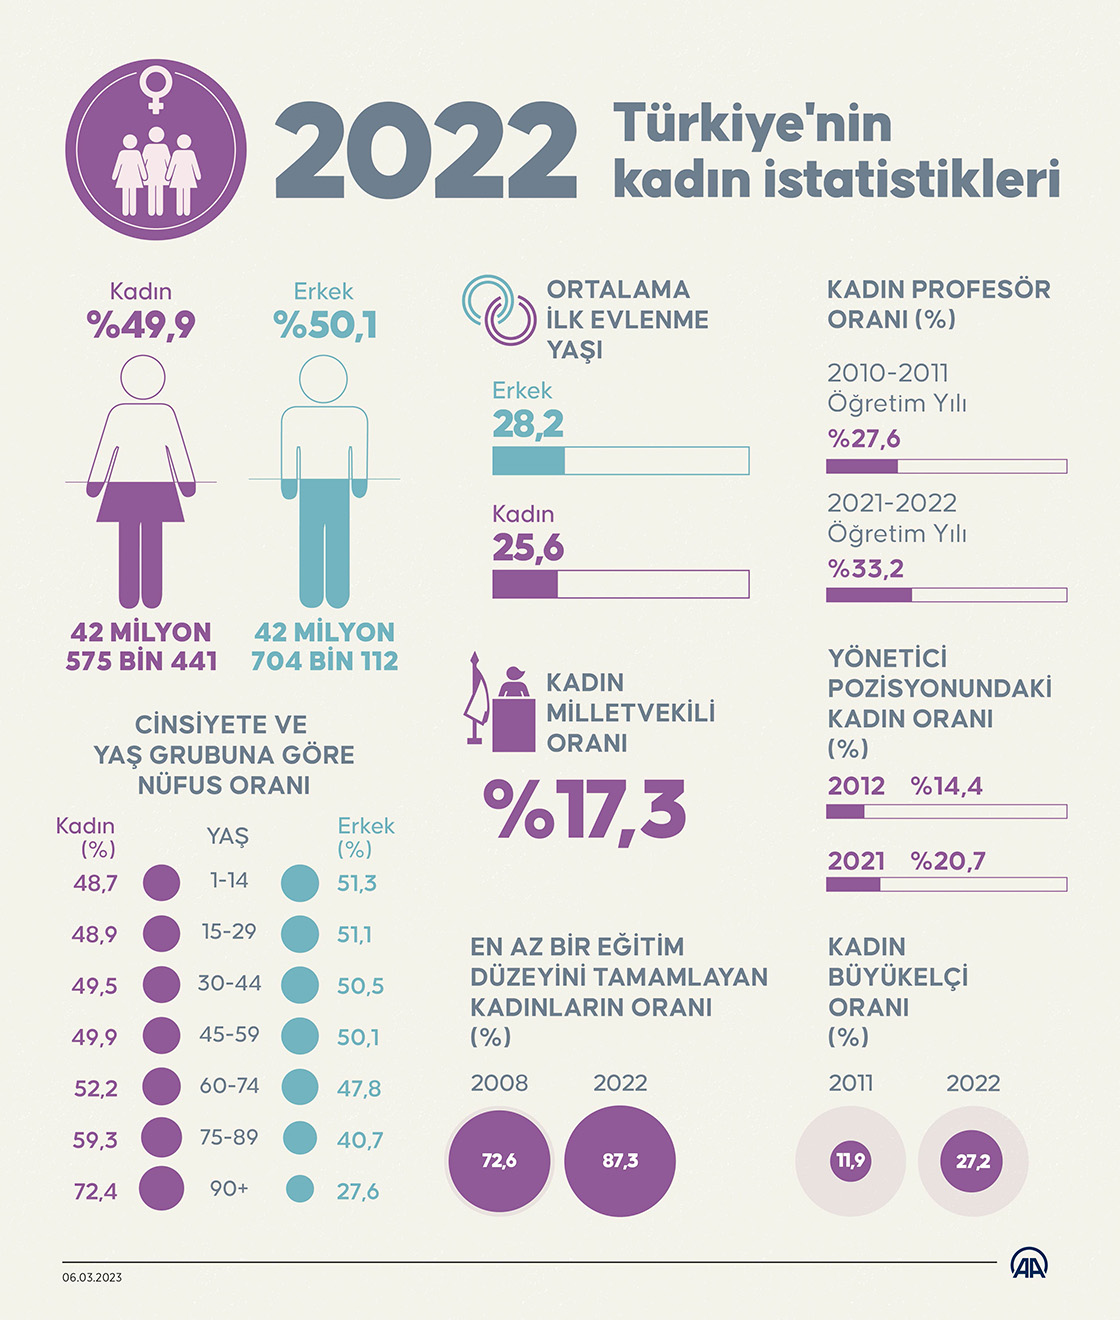  2022 Türkiye’nin kadın istatistikleri